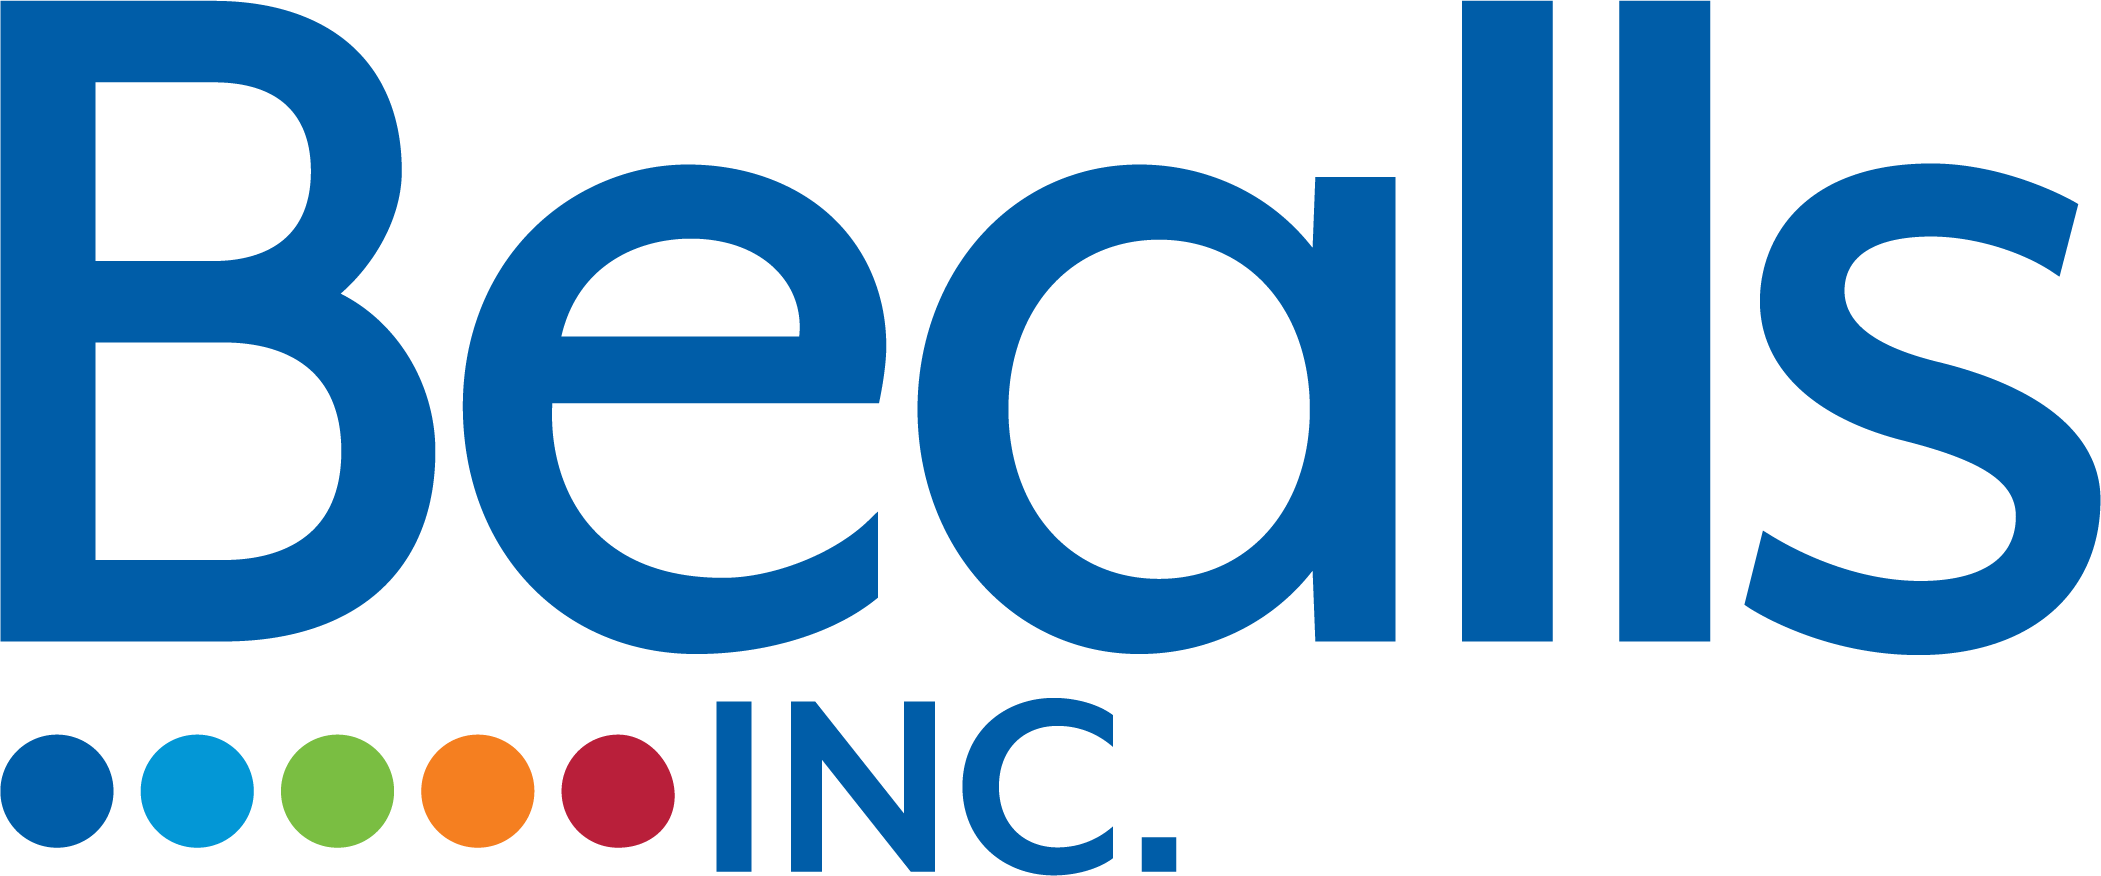 Bealls & Burkes Outlet Company Logo